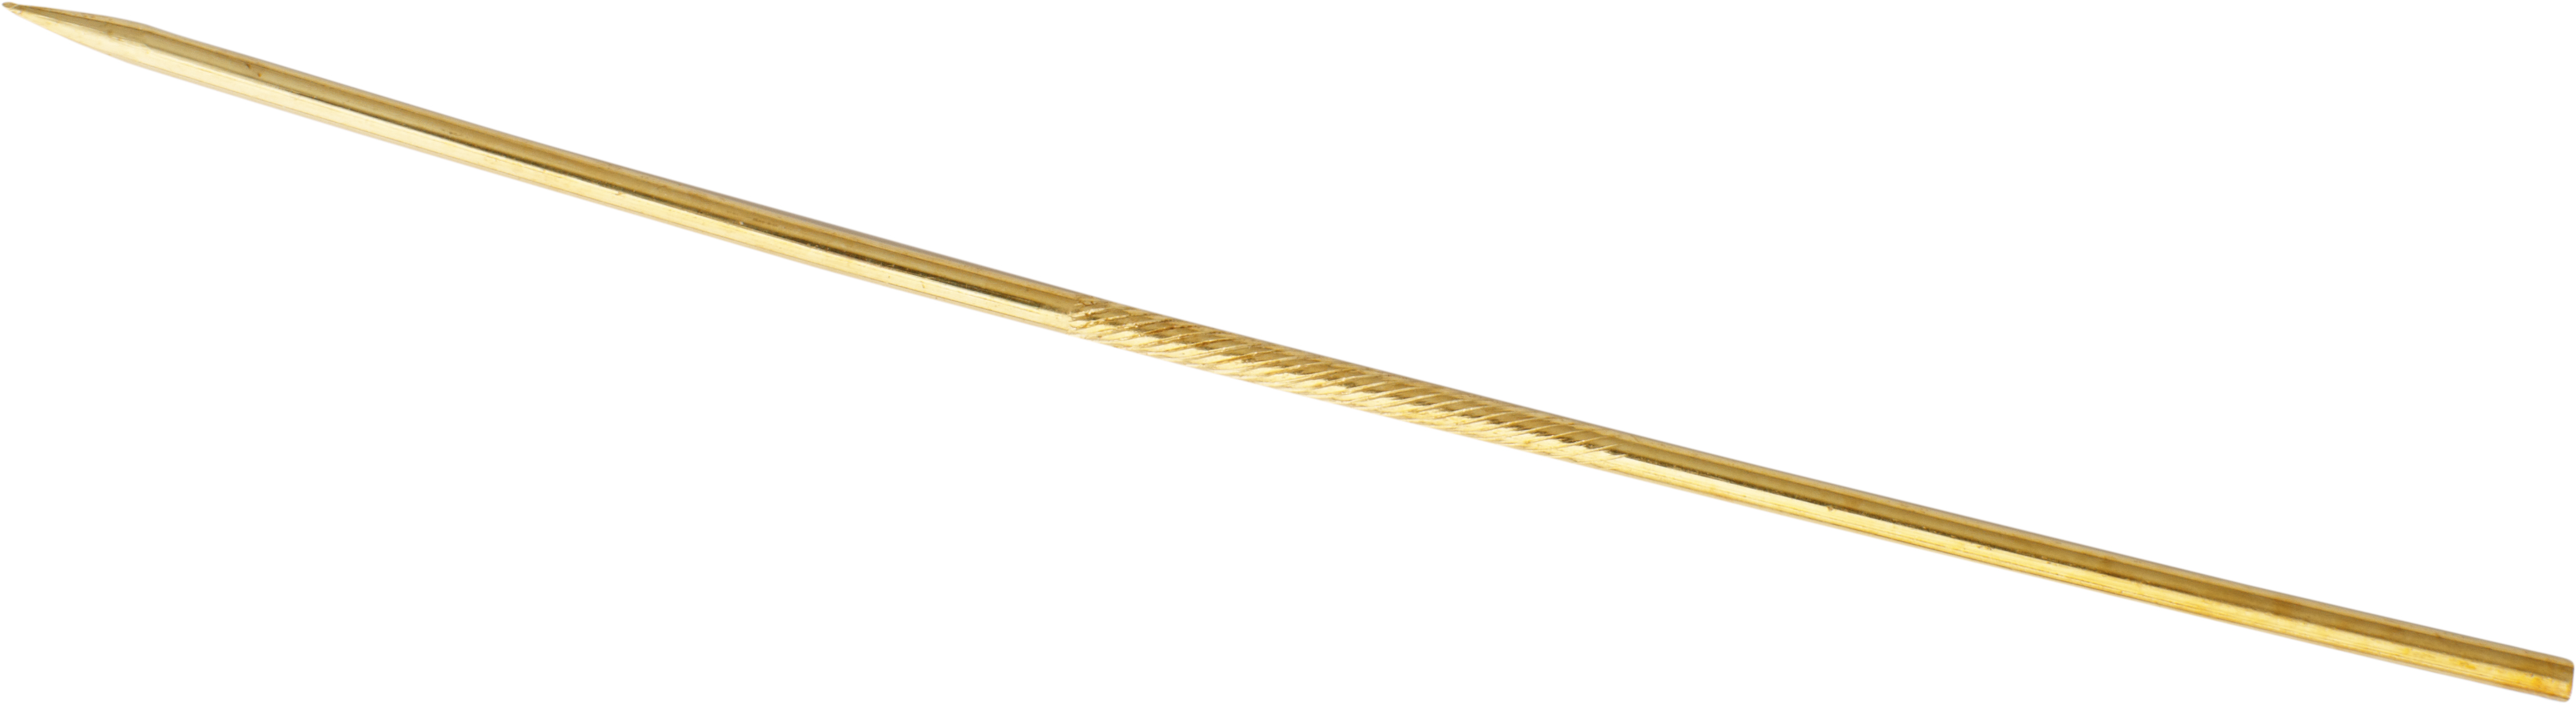 Szpilka do krawata złoto 585/-żółte złoto długość 60,00mm, prosta